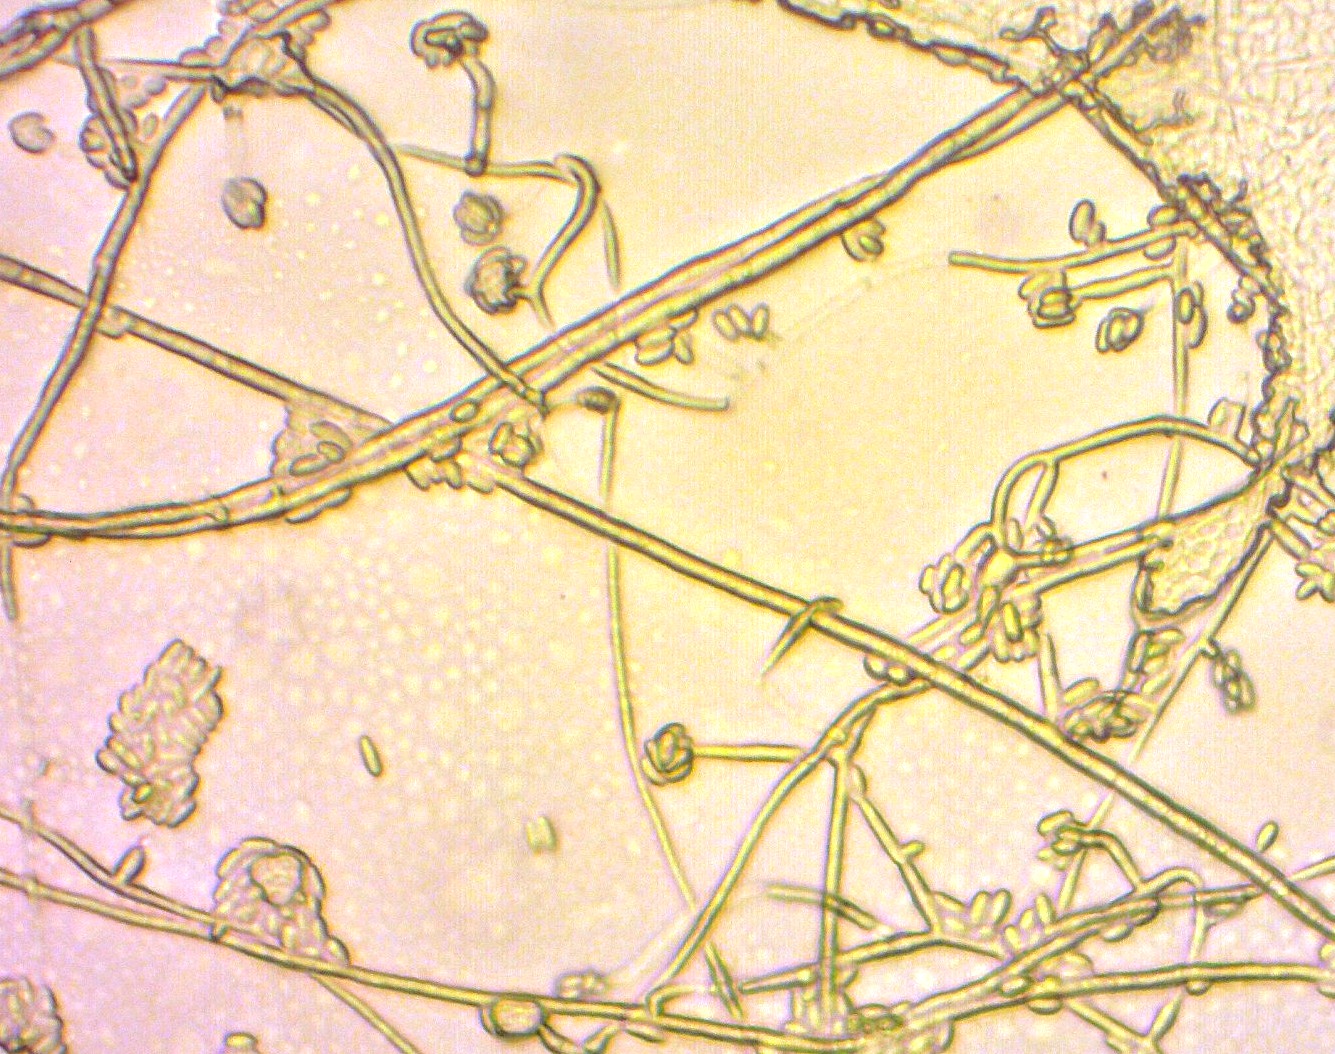 Caso clinico 1: Caratteristiche microscopiche di  F. oxysporum - ife sottili, ialine e settate, con conidiofori portanti microconidi piccoli e ovali, a 1-2 cellule, isolate o raggruppati in piccoli clusters (microscopio ottico, 40X)